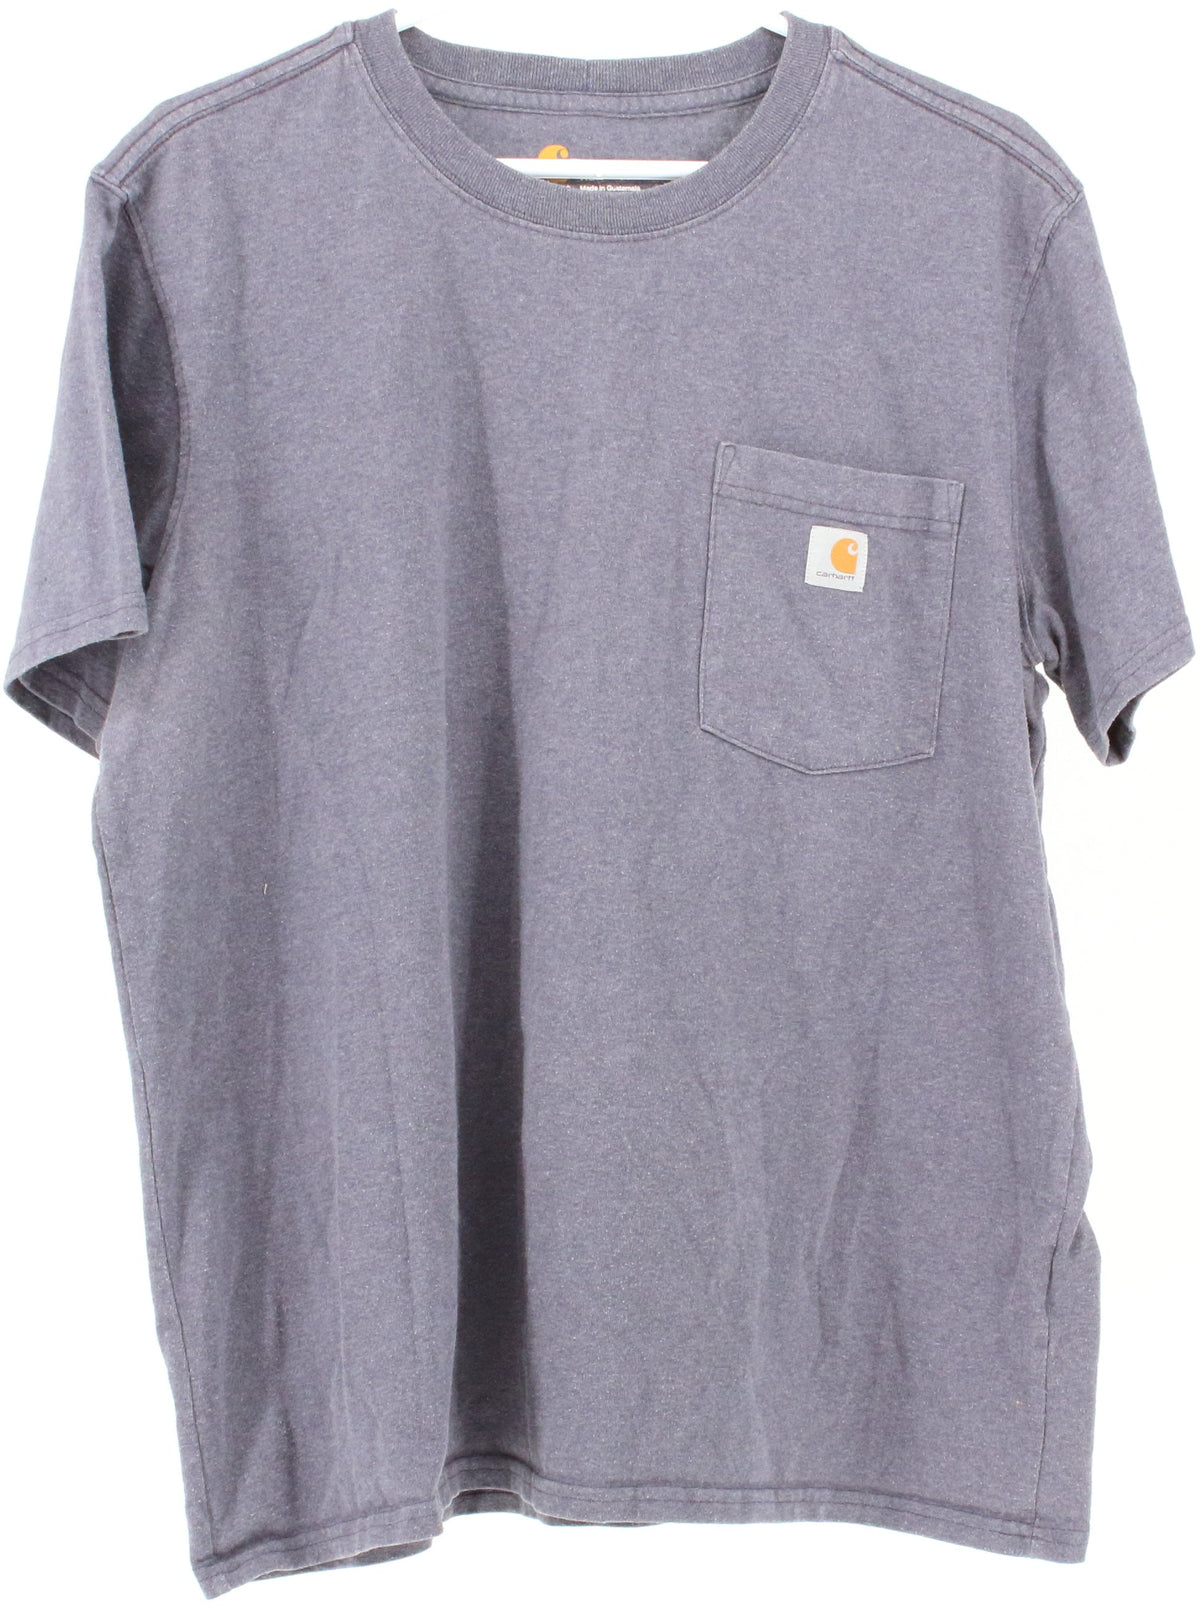 Carhartt Dark Grey Front Pocket Children's T-Shirt